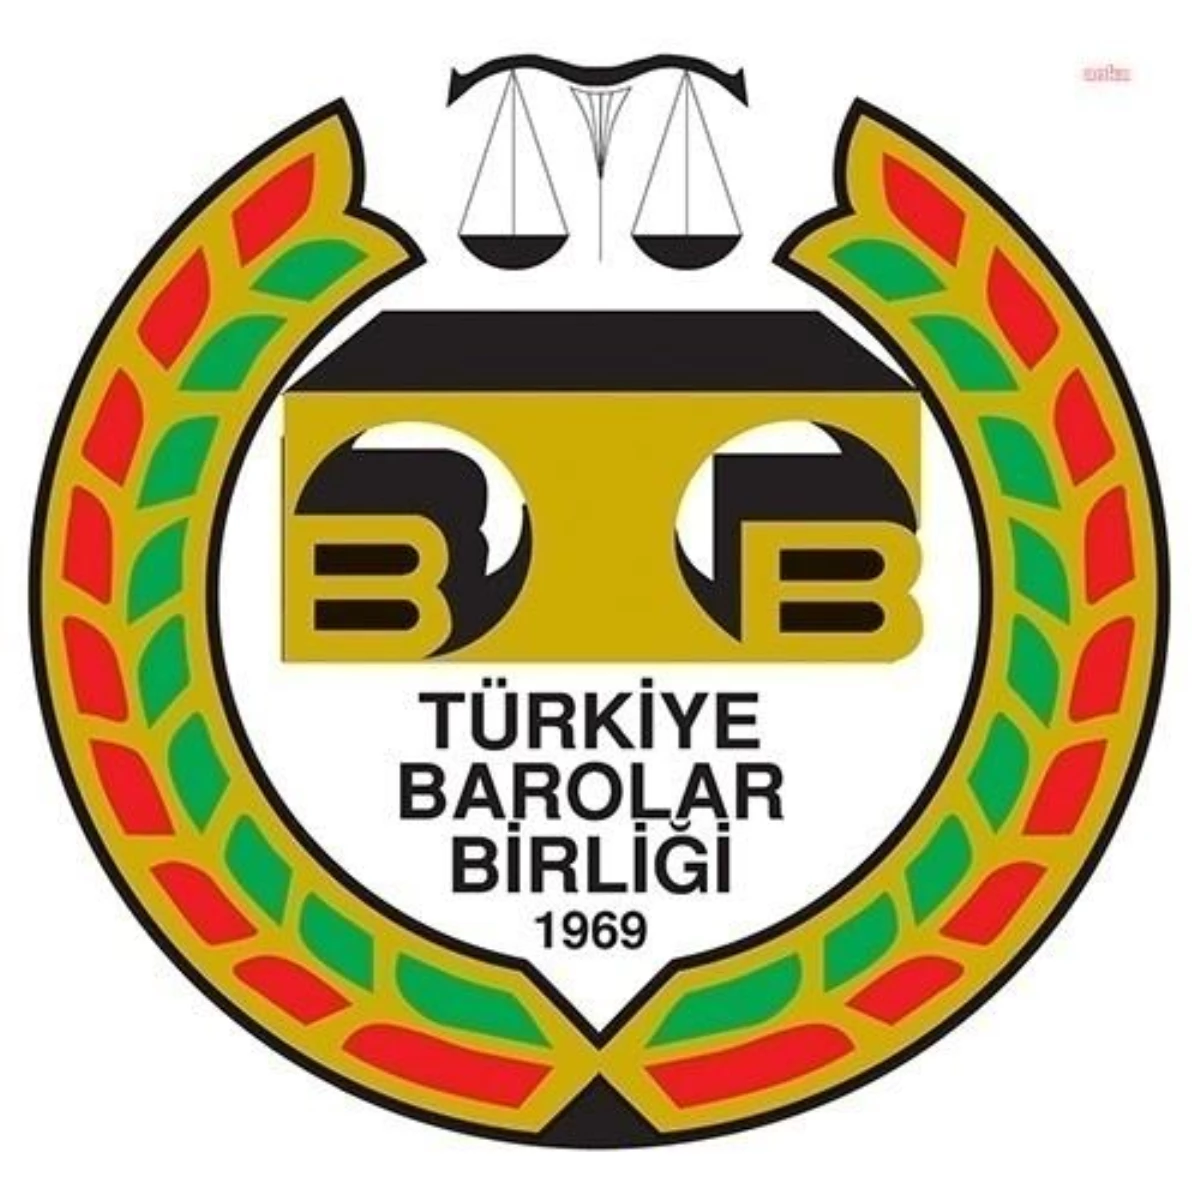 Türkiye Barolar Birliği: "Türk Medeni Kanunu\'nun 129. Maddesi Uyarınca Evlat Edinen ile Evlatlık ve Onun Çocukları Arasında Evlenme Yasaktır"